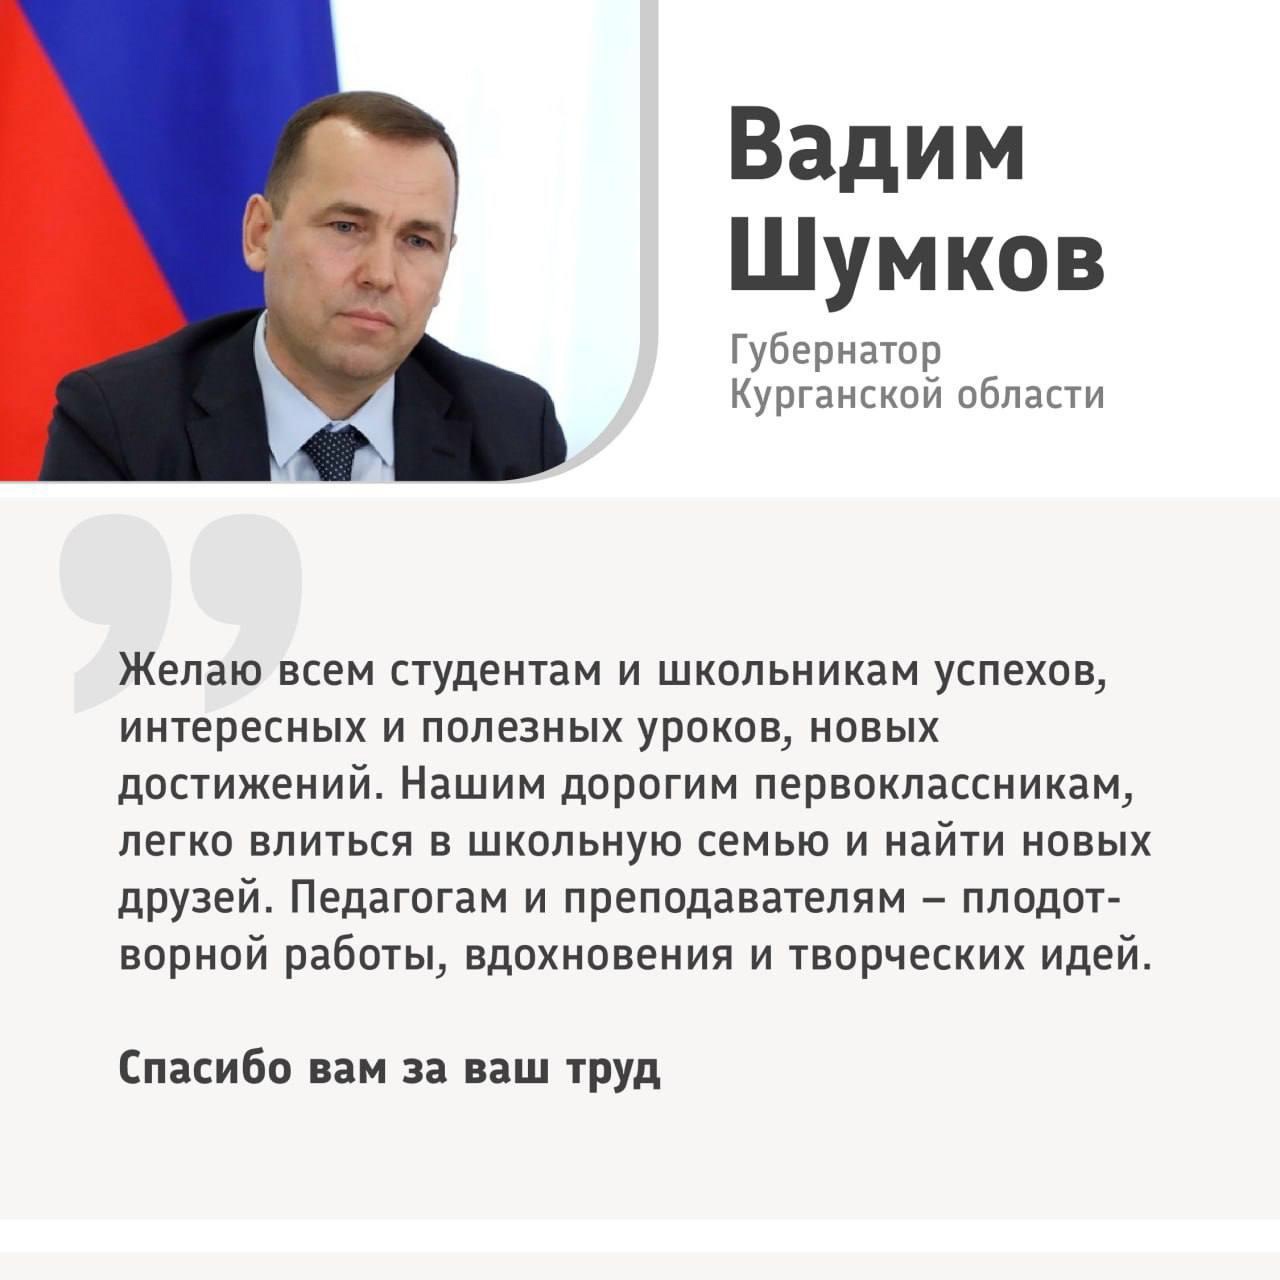 Губернатор Вадим Шумков поздравил школьников, студентов и преподавателей с Днем знаний.